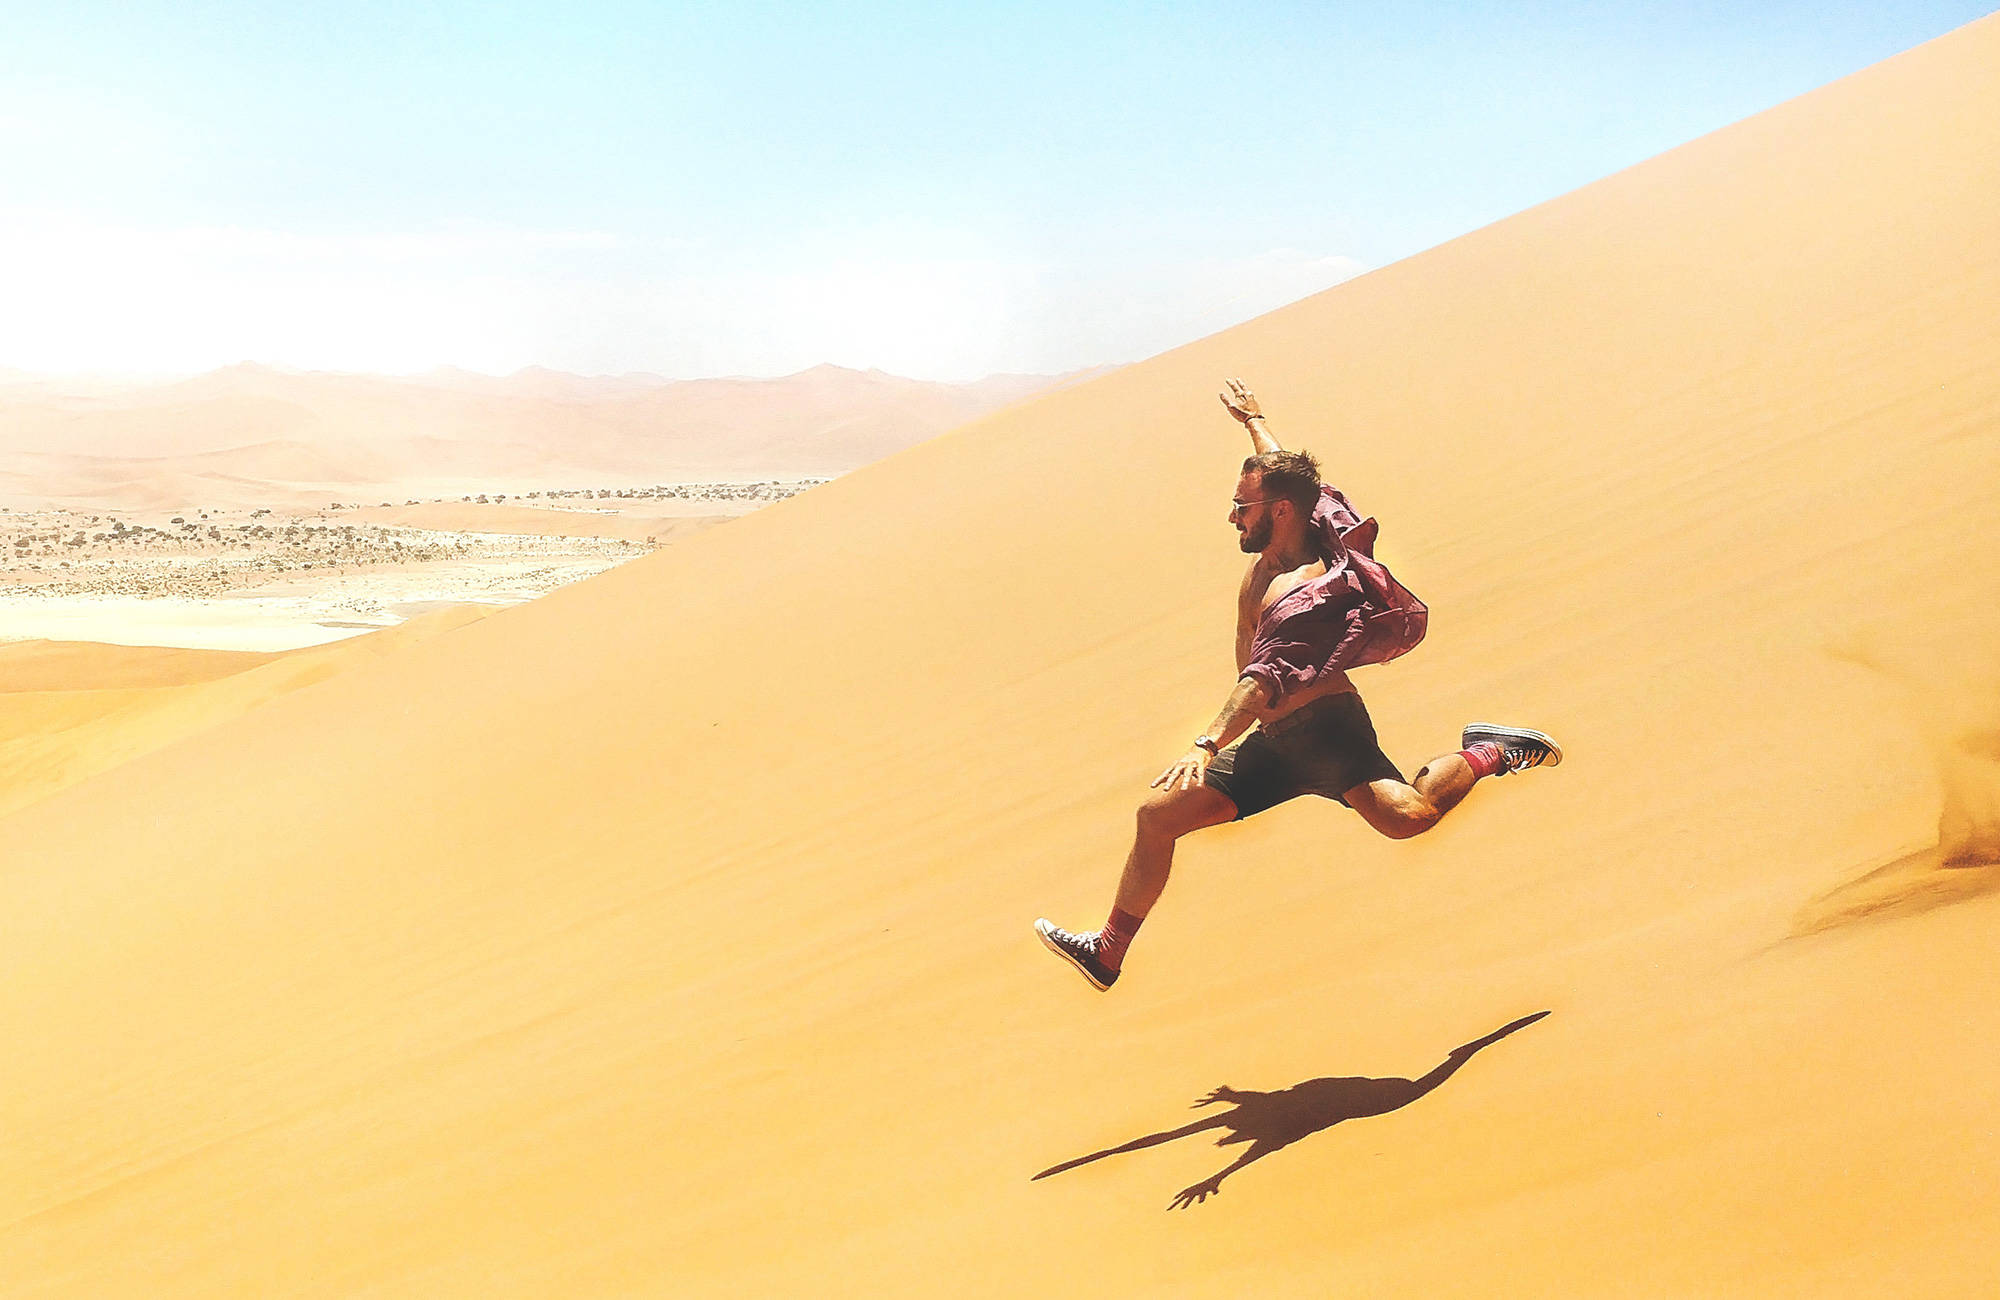 namibia-sand-dune-jump-male-backpacker